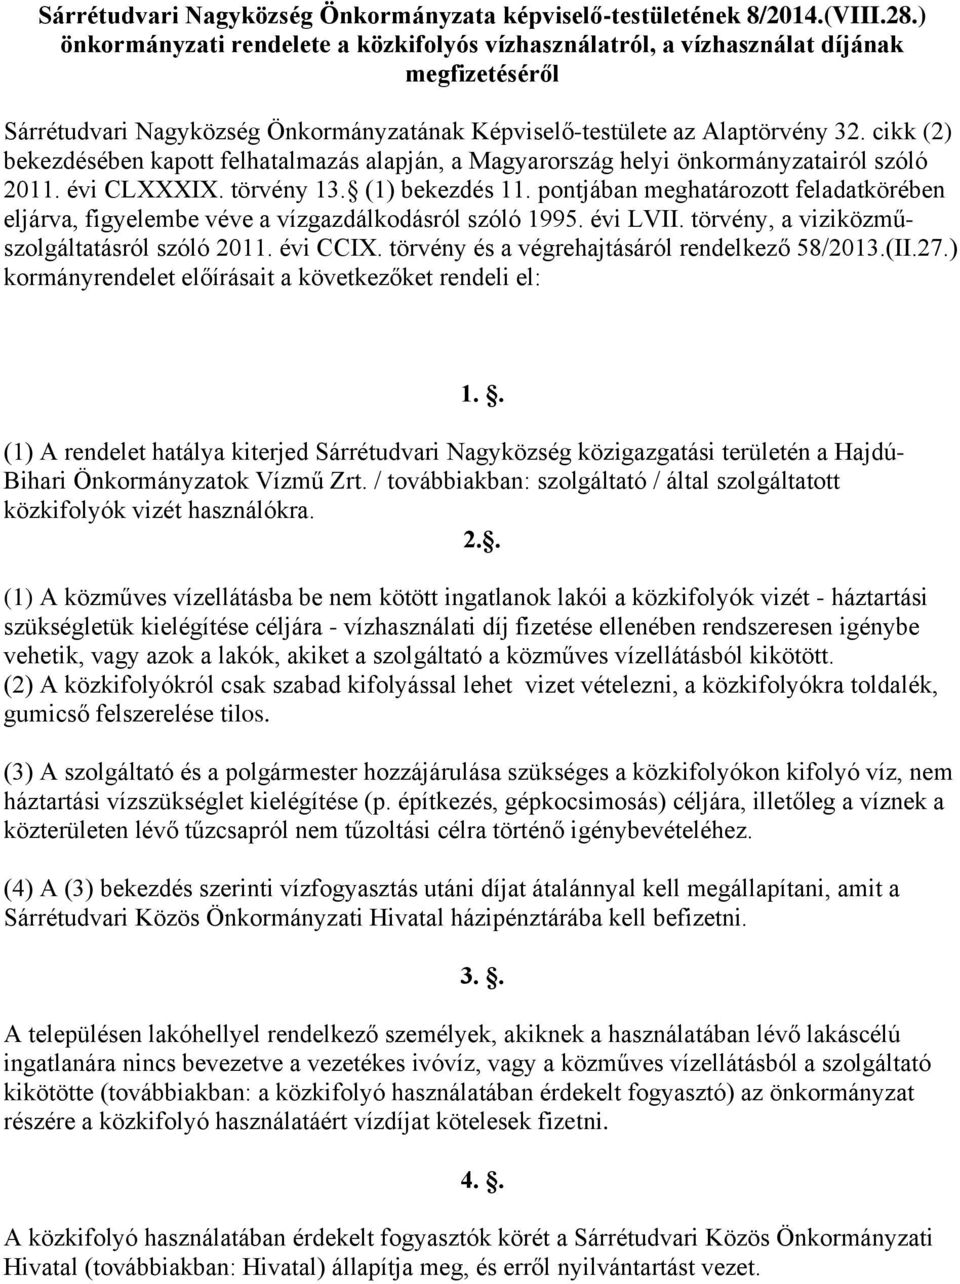 cikk (2) bekezdésében kapott felhatalmazás alapján, a Magyarország helyi önkormányzatairól szóló 2011. évi CLXXXIX. törvény 13. (1) bekezdés 11.